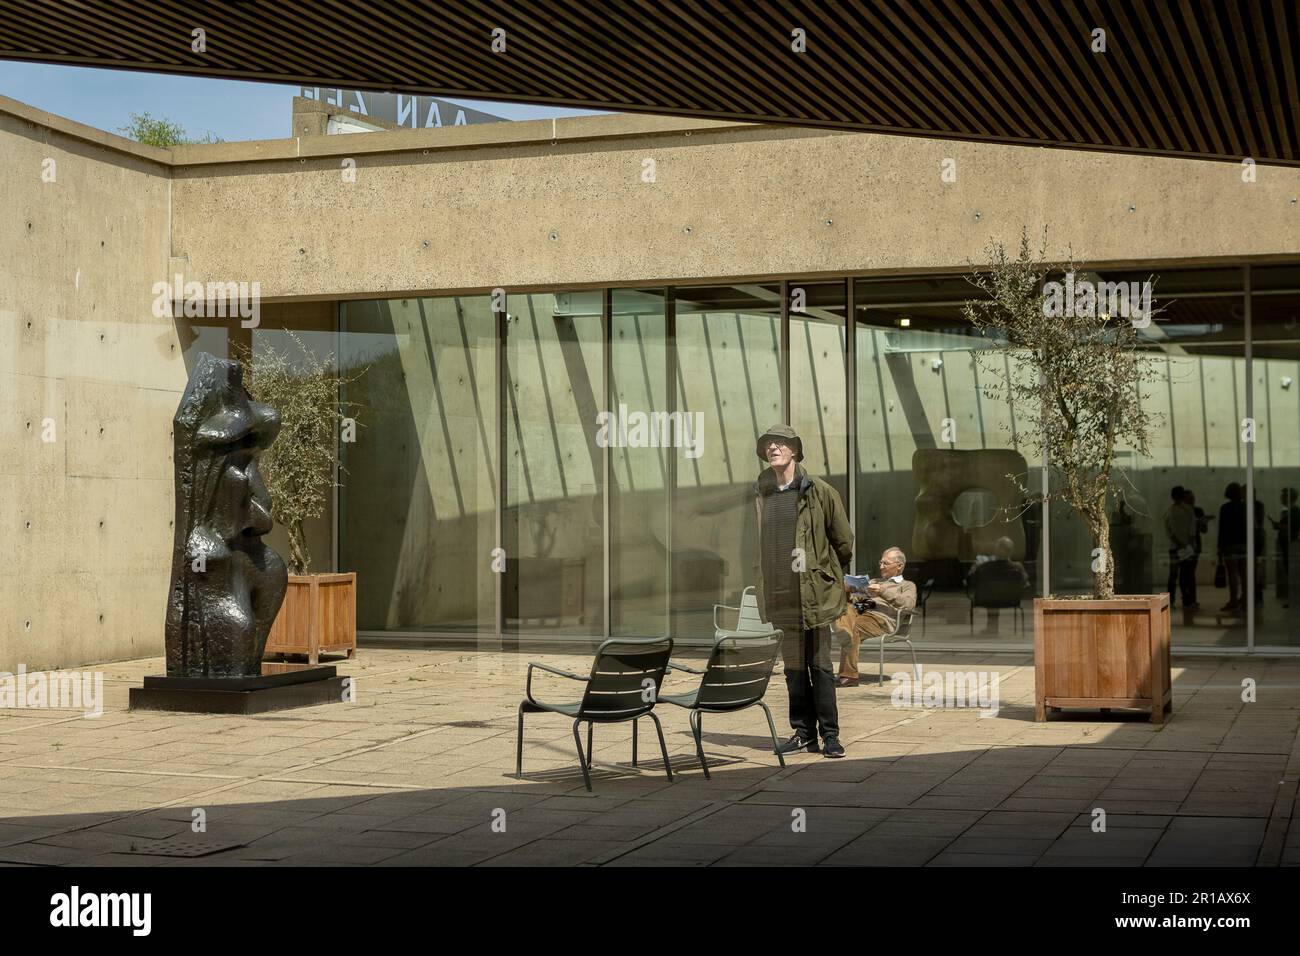 Piazza patio di architettura contemporanea in un moderno museo di sculture con persone su una terrazza di statue, spazio esterno interno altamente stilizzato Foto Stock